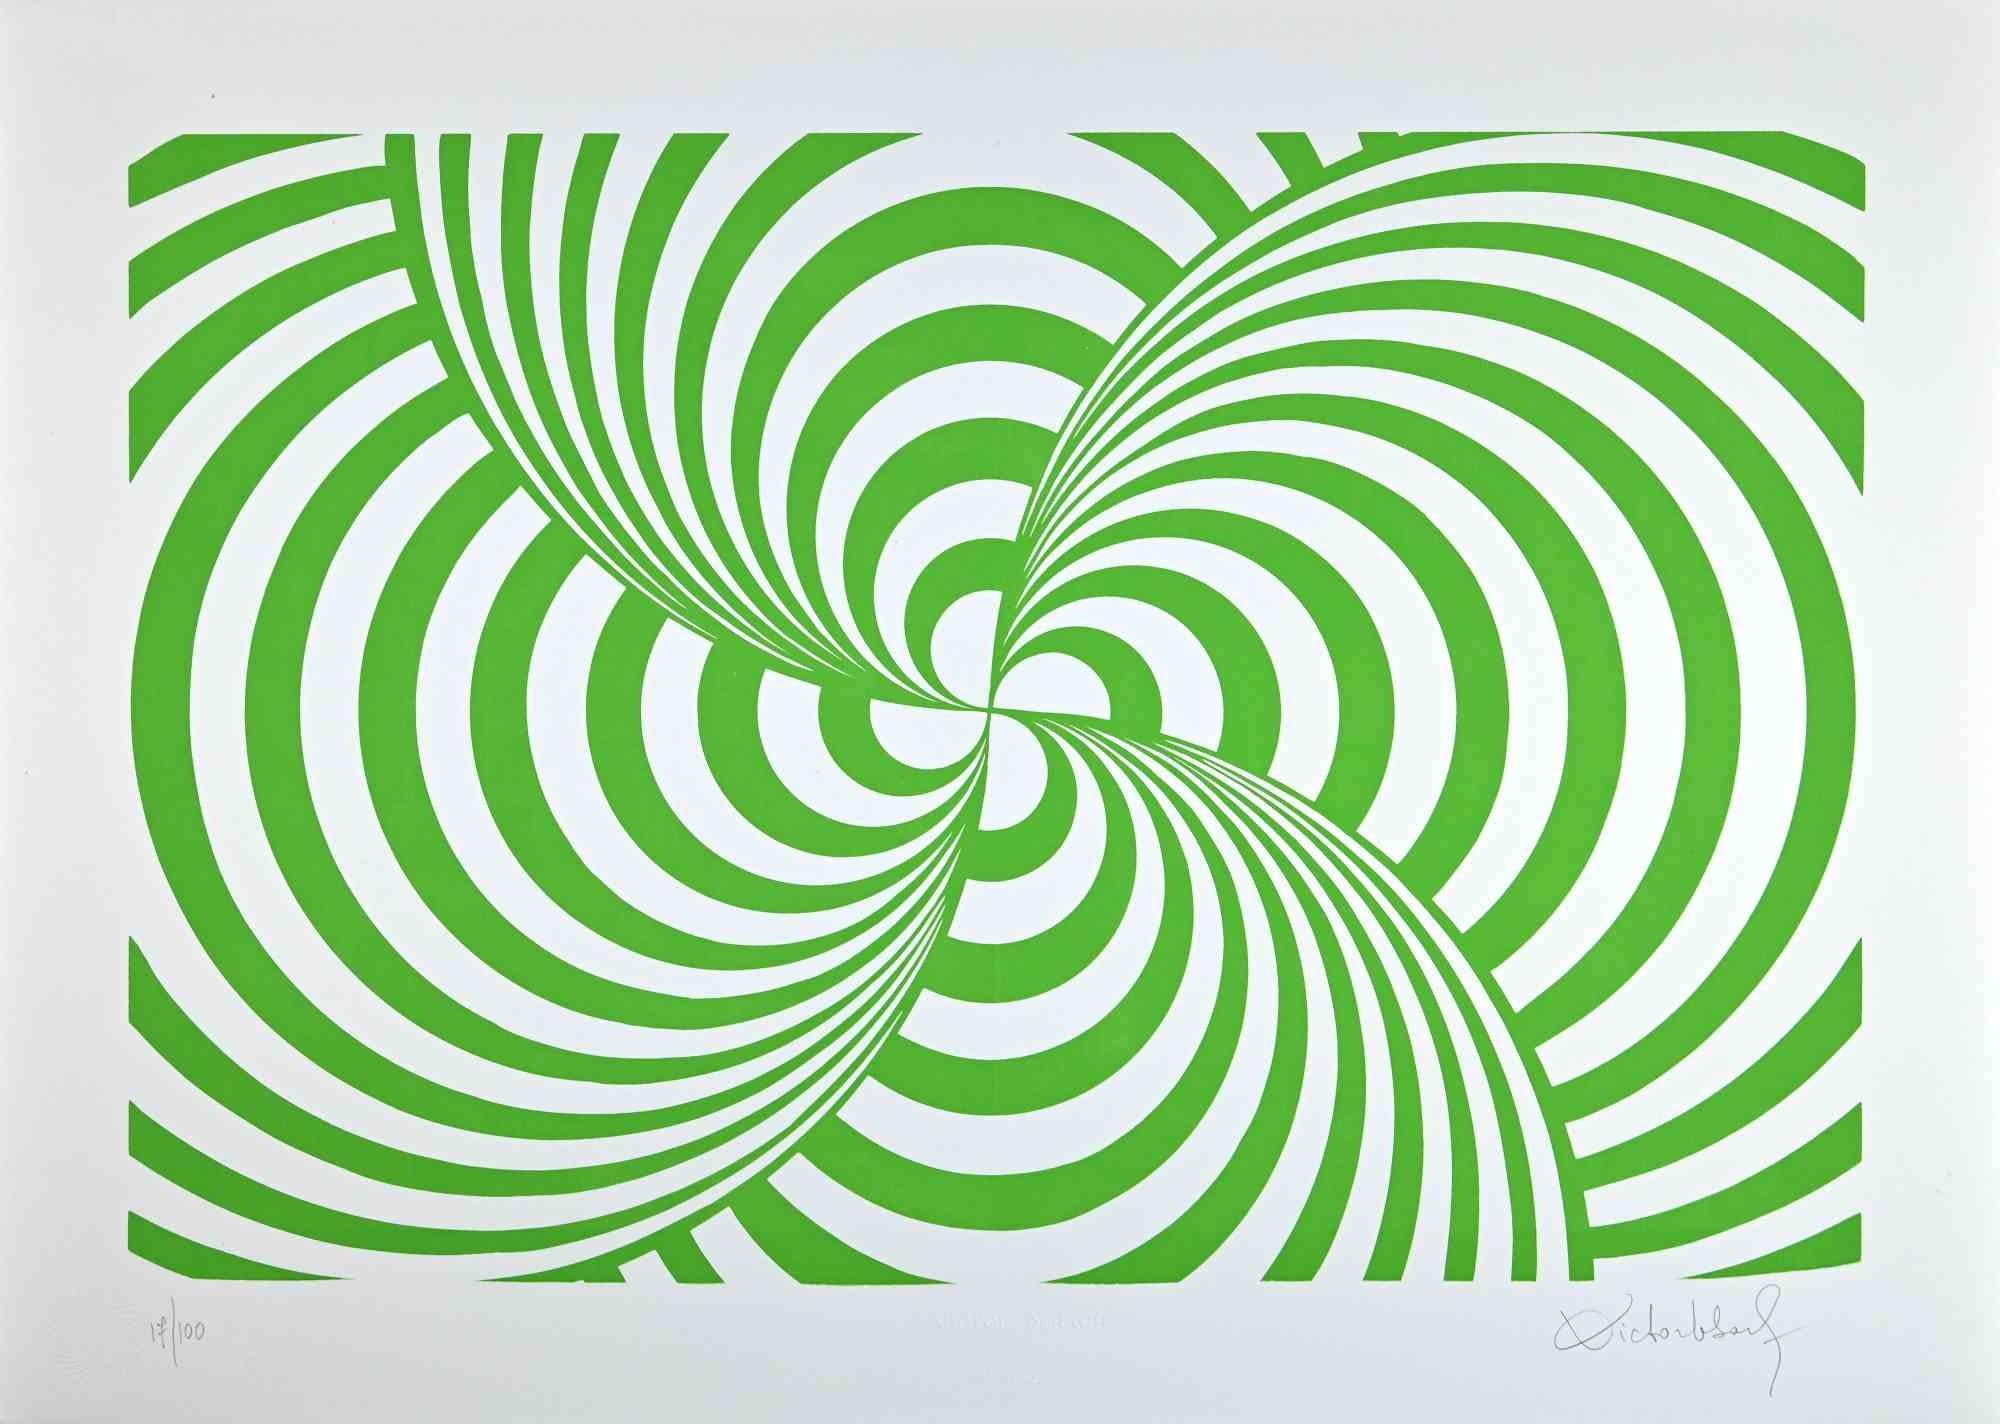 Composition abstraite verte est une sérigraphie sur papier réalisée par Victor Debach dans les années 1970.

Édition limitée à 100 exemplaires numérotés et signés par l'artiste au crayon dans la marge inférieure. 

Edition 17/100

Bon état sur